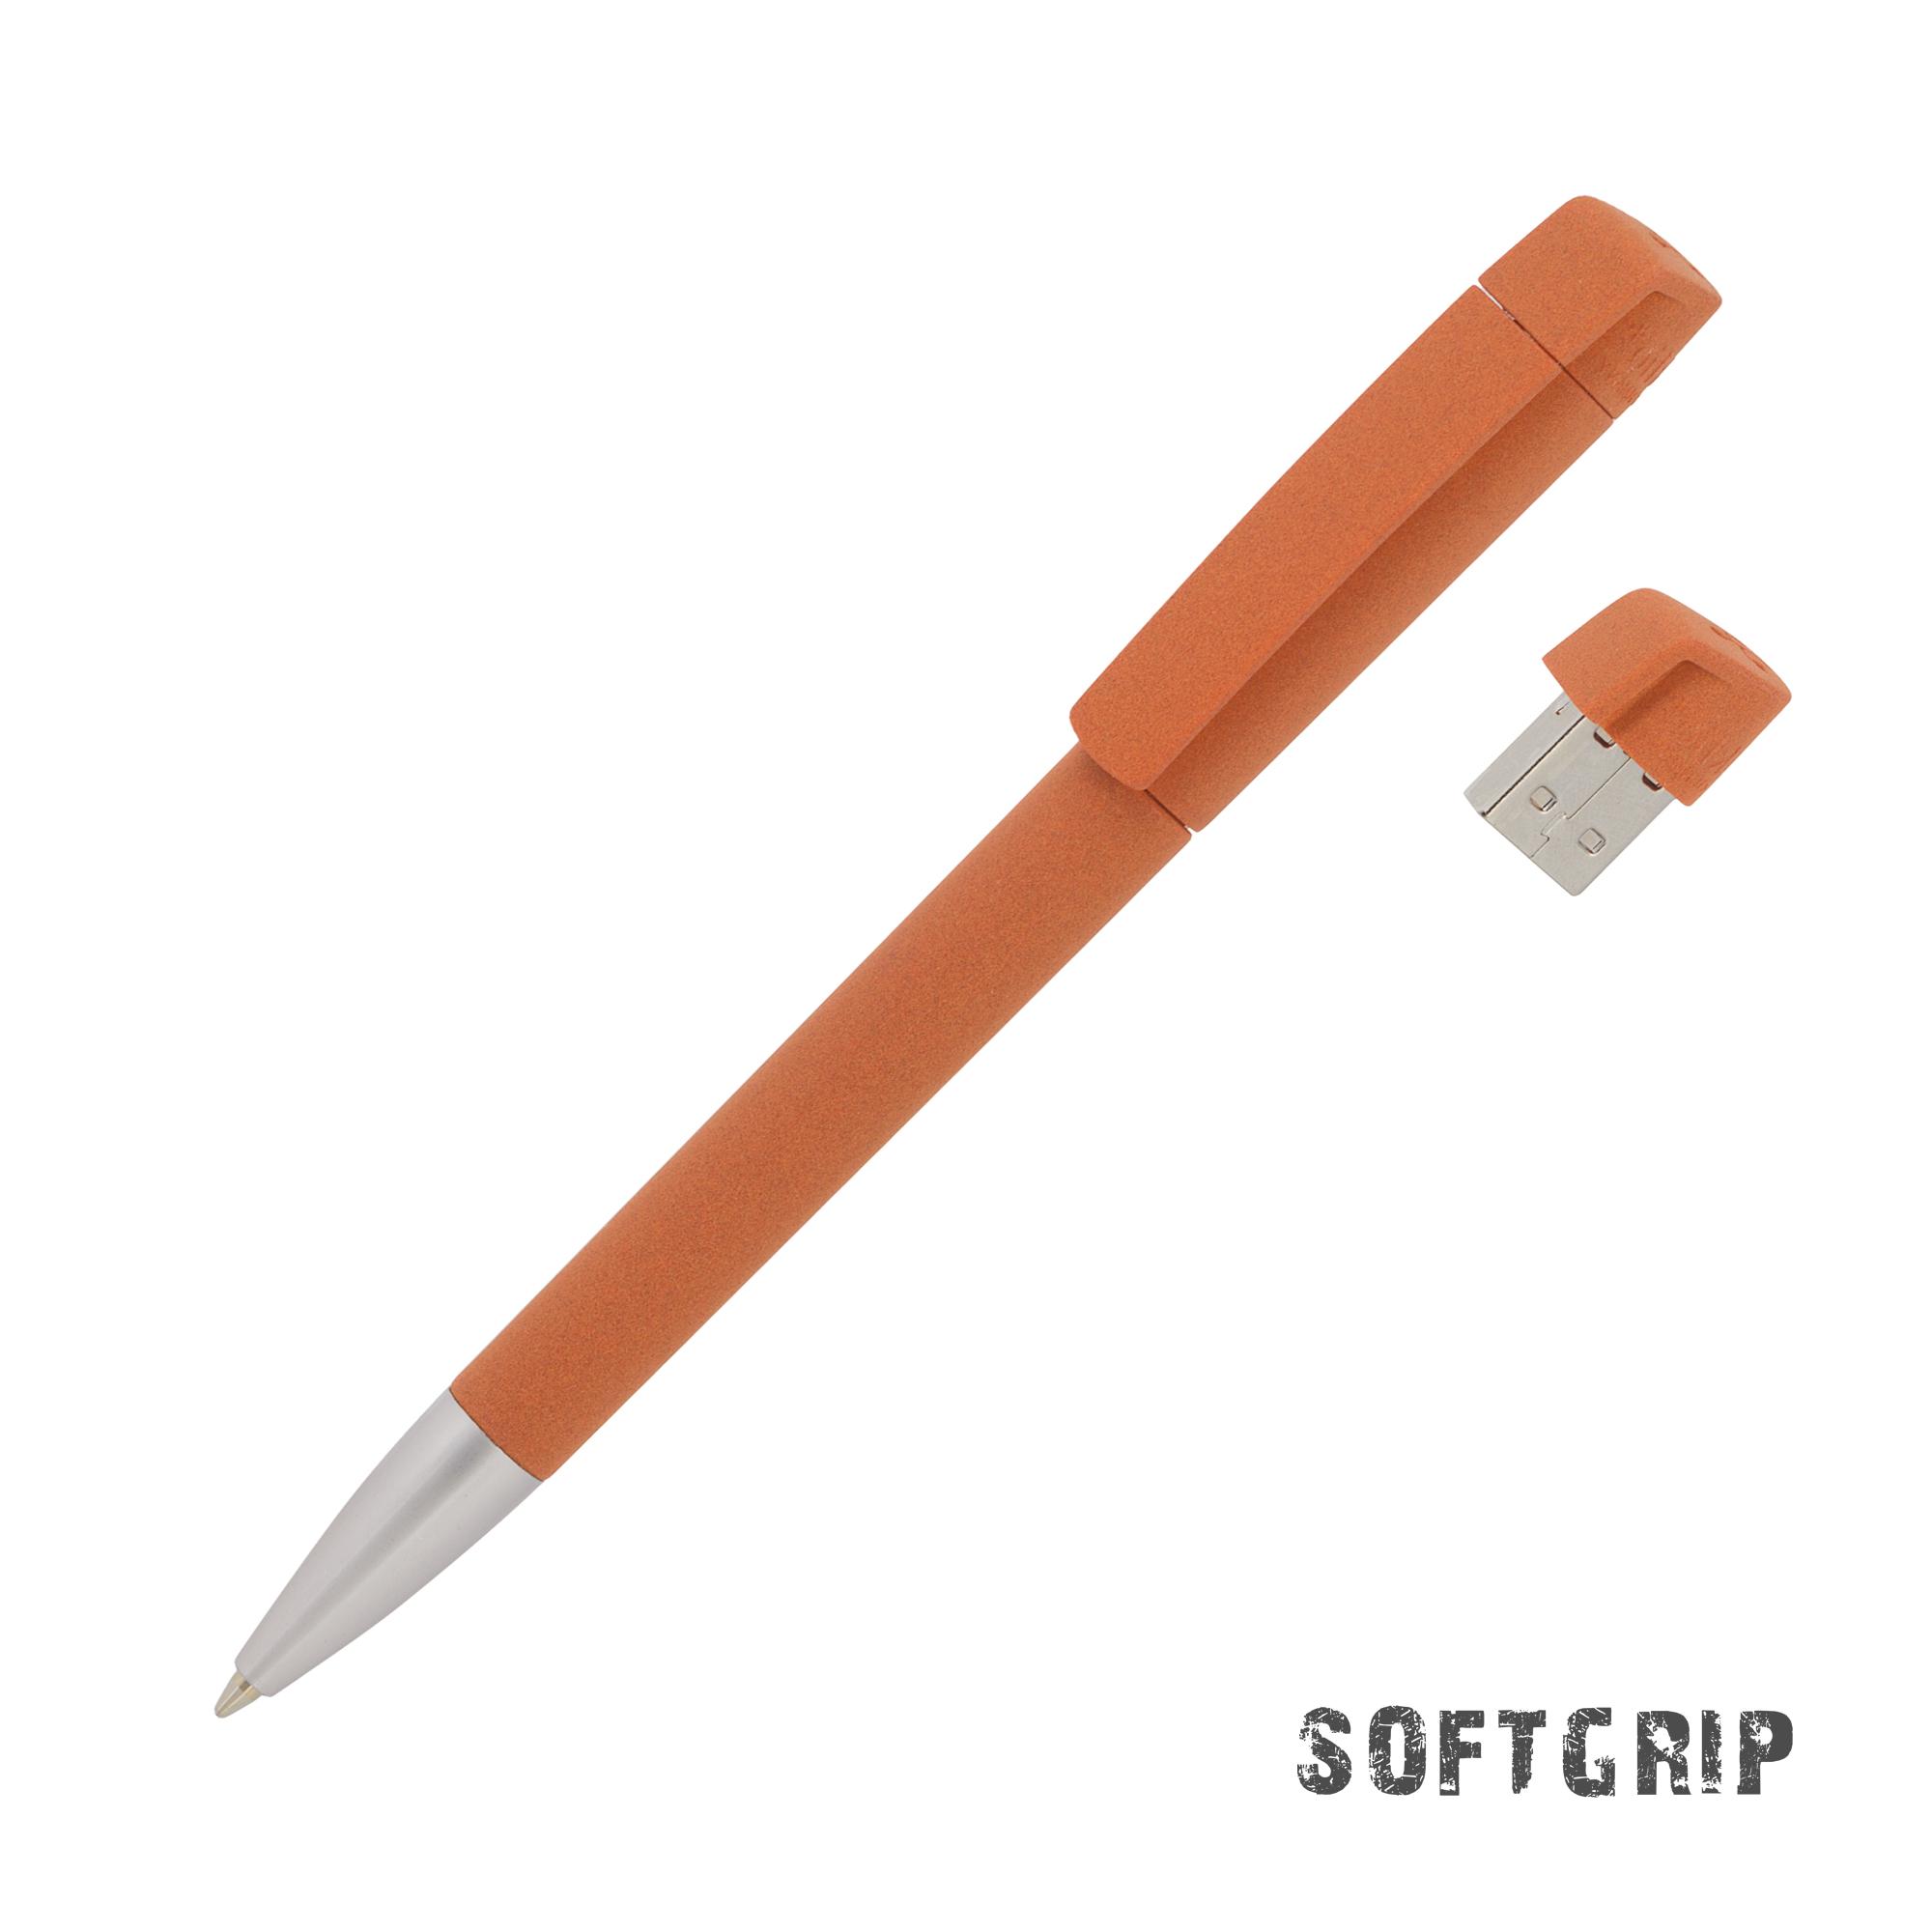 Ручка с флеш-картой USB 16GB «TURNUSsofttouch M», цвет черный - купить оптом